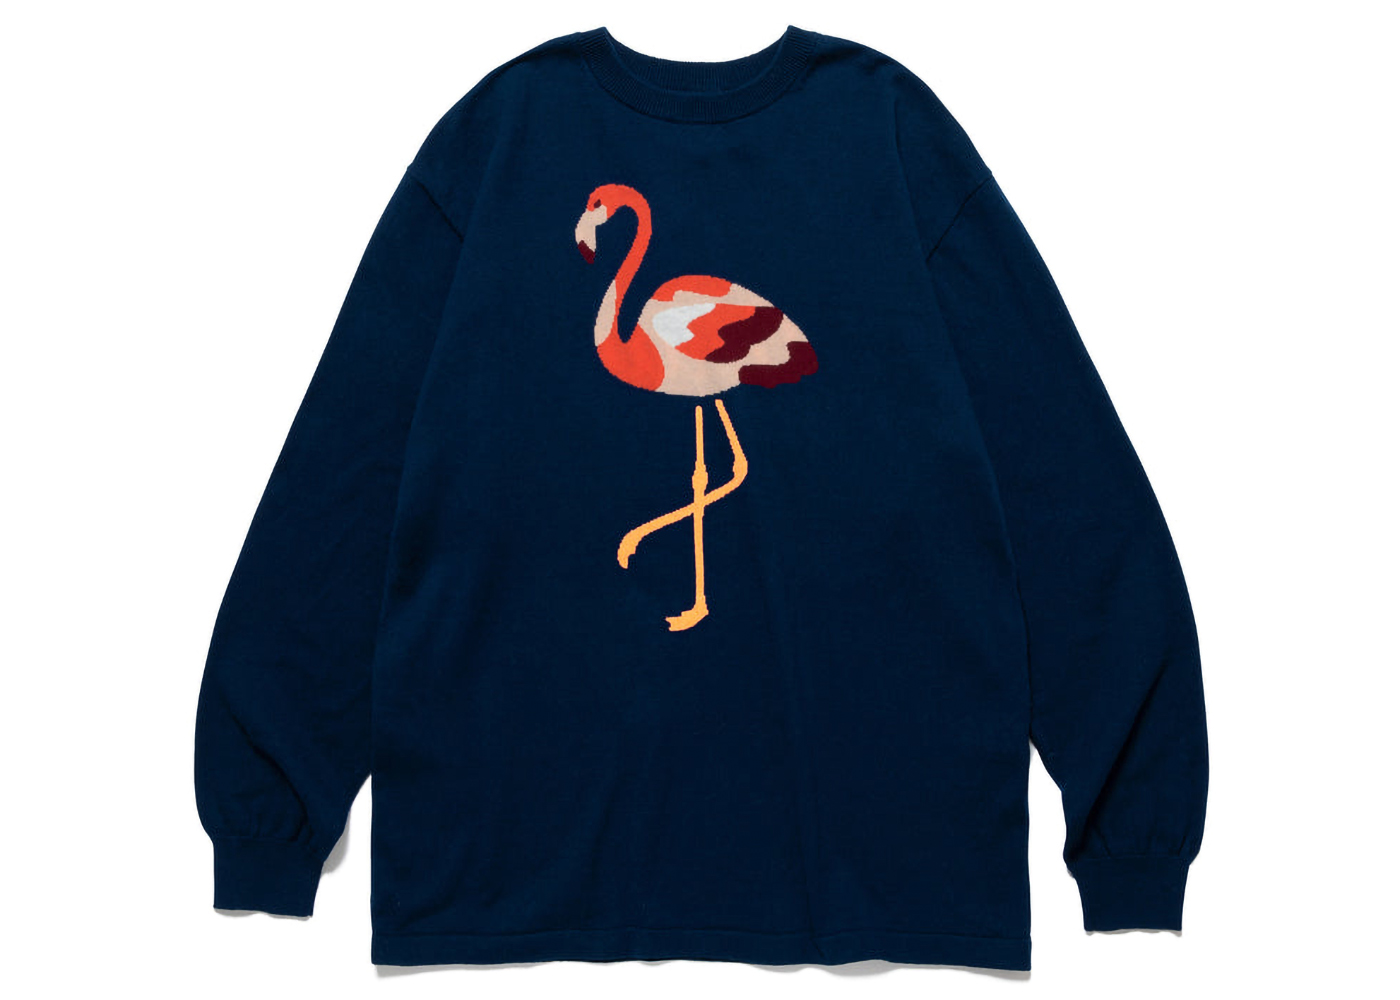 即日発送いたしますHuman Made Flamingo Knit Sweater navy